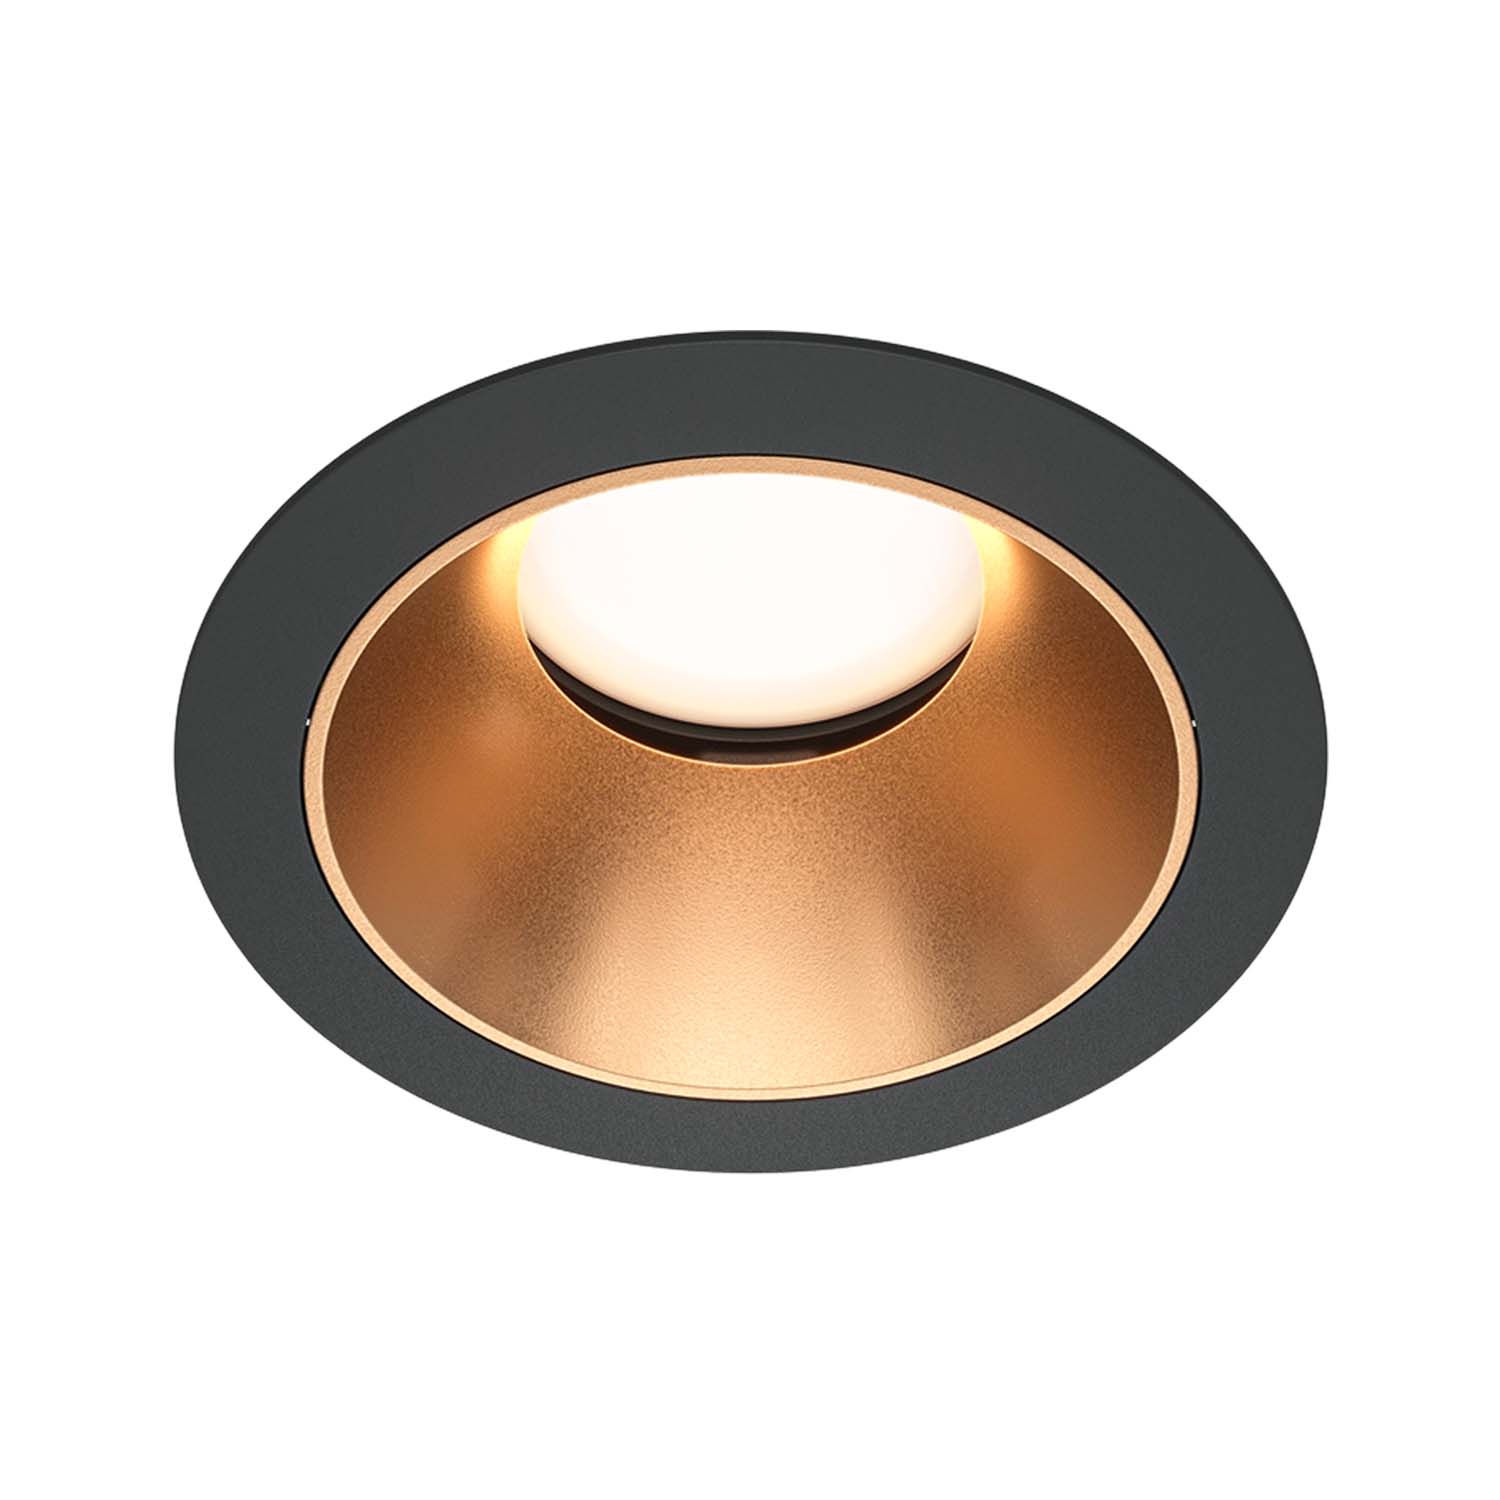 TEILEN – Designer-Einbaustrahler rund, Durchmesser 85 mm